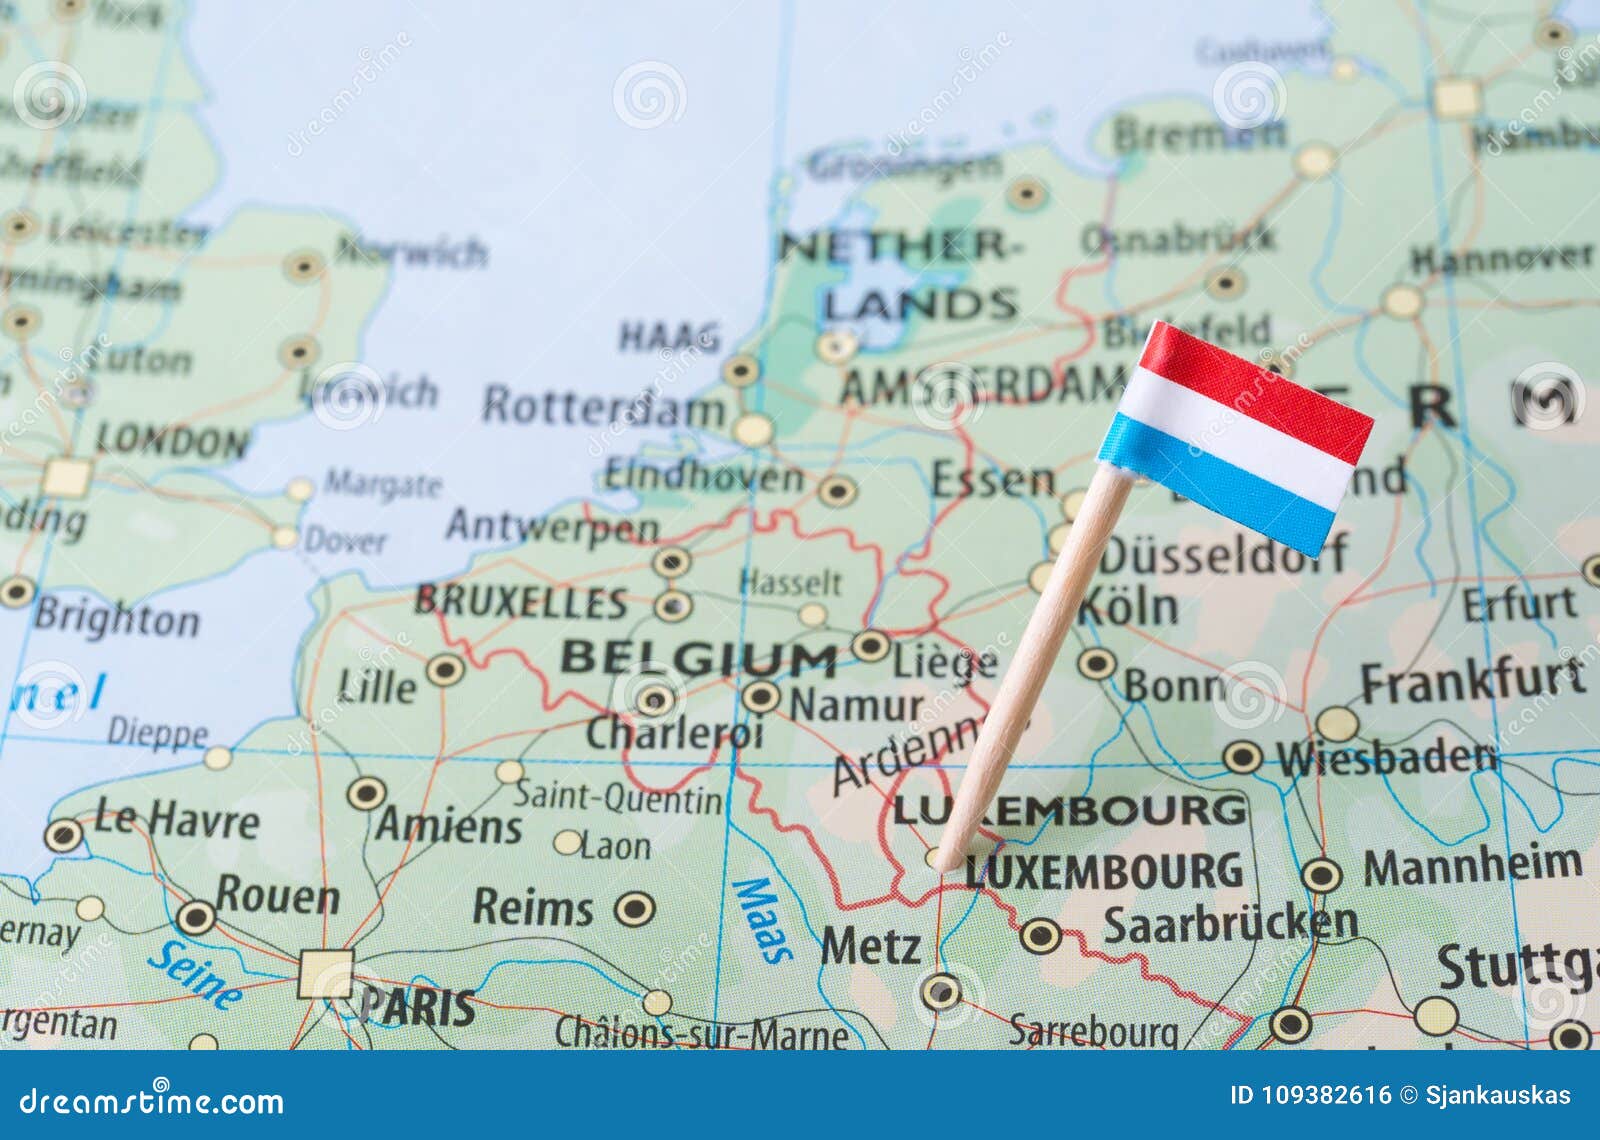 luxemburg-kennzeichnen-auf-einer-landkarte-109382616.jpg